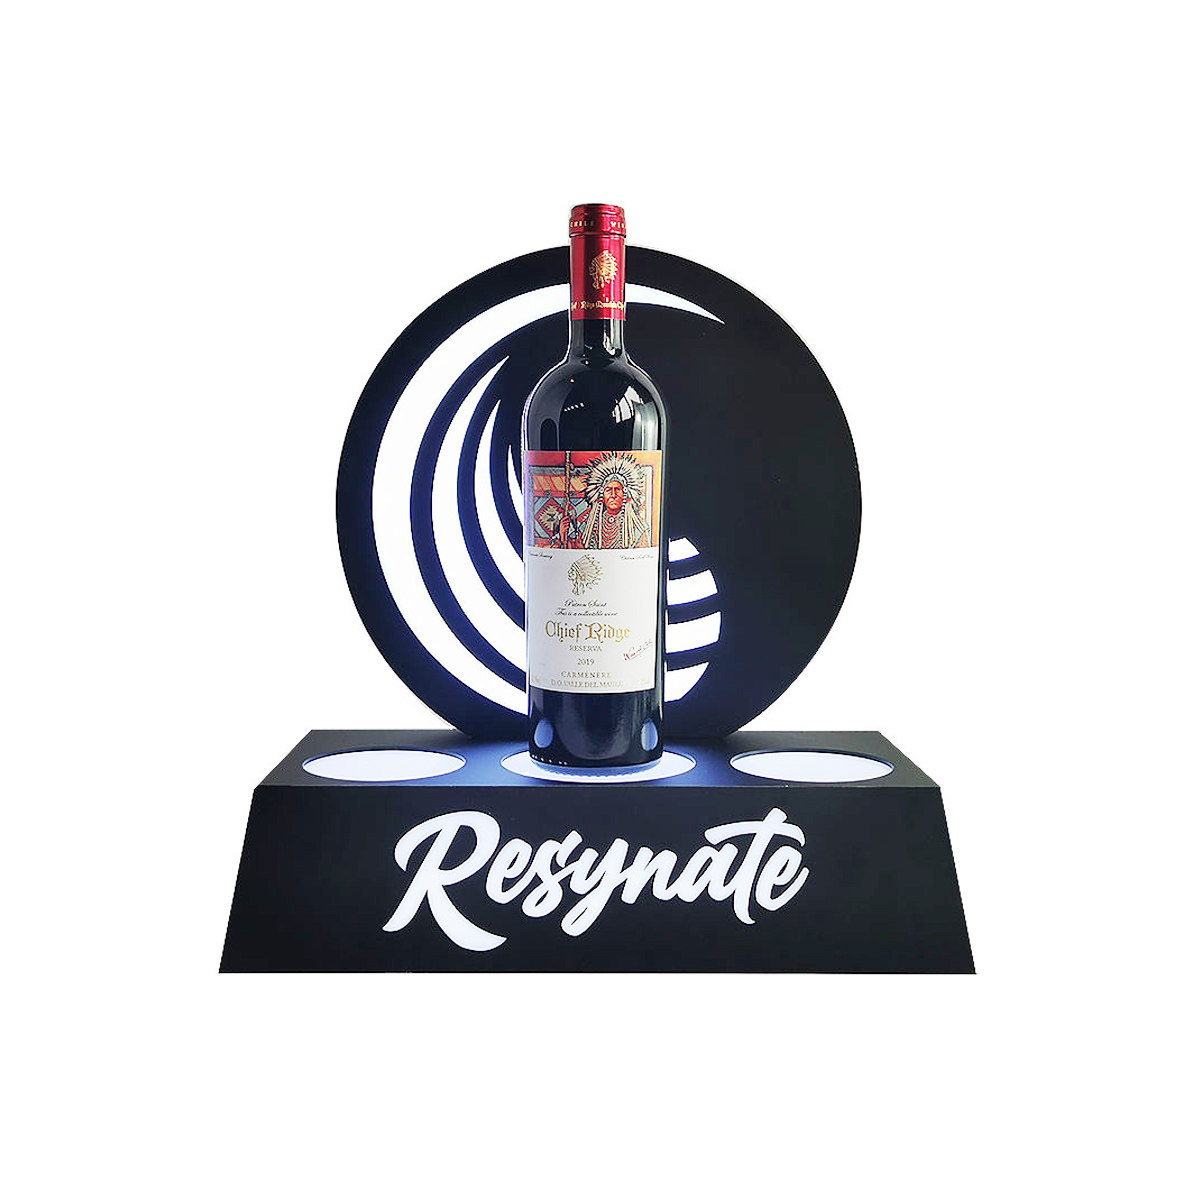 LED luminous wine bottle display stand with glorifier logo